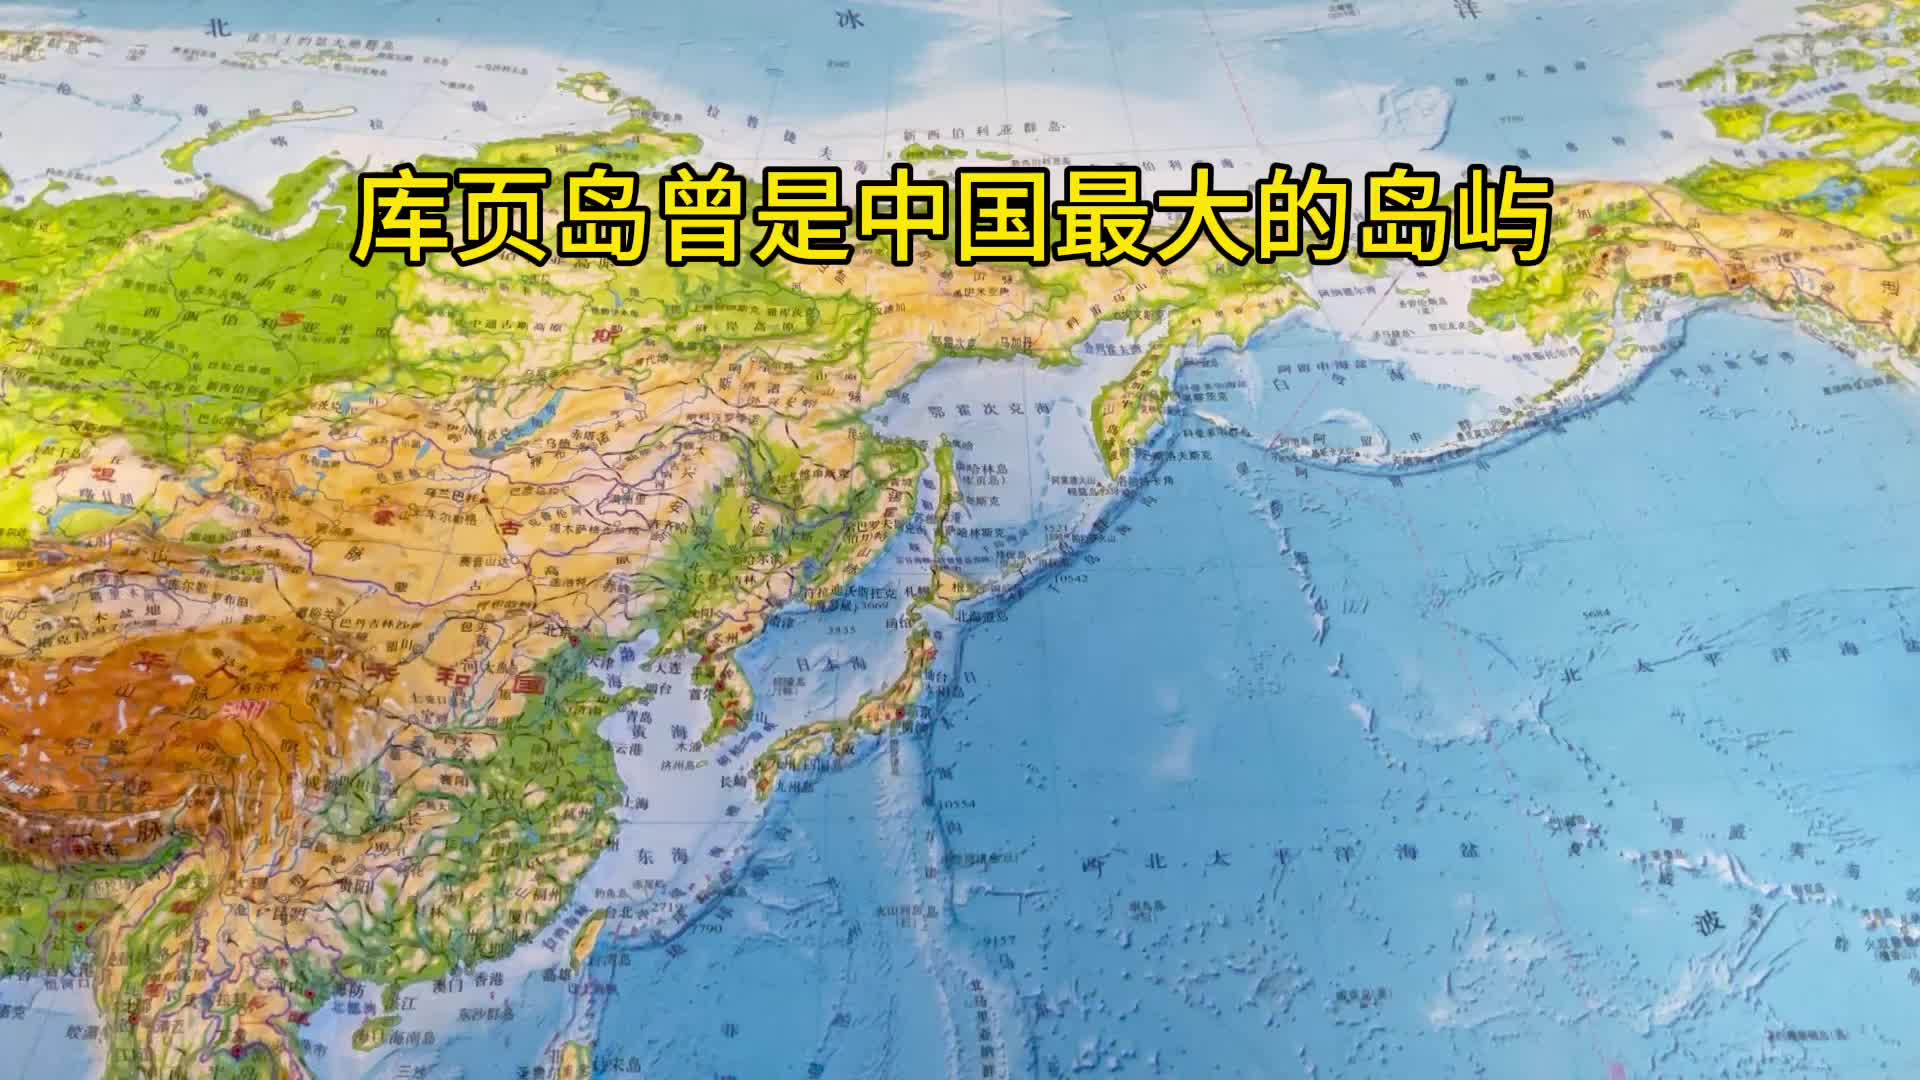 库页岛曾是中国最大的岛屿